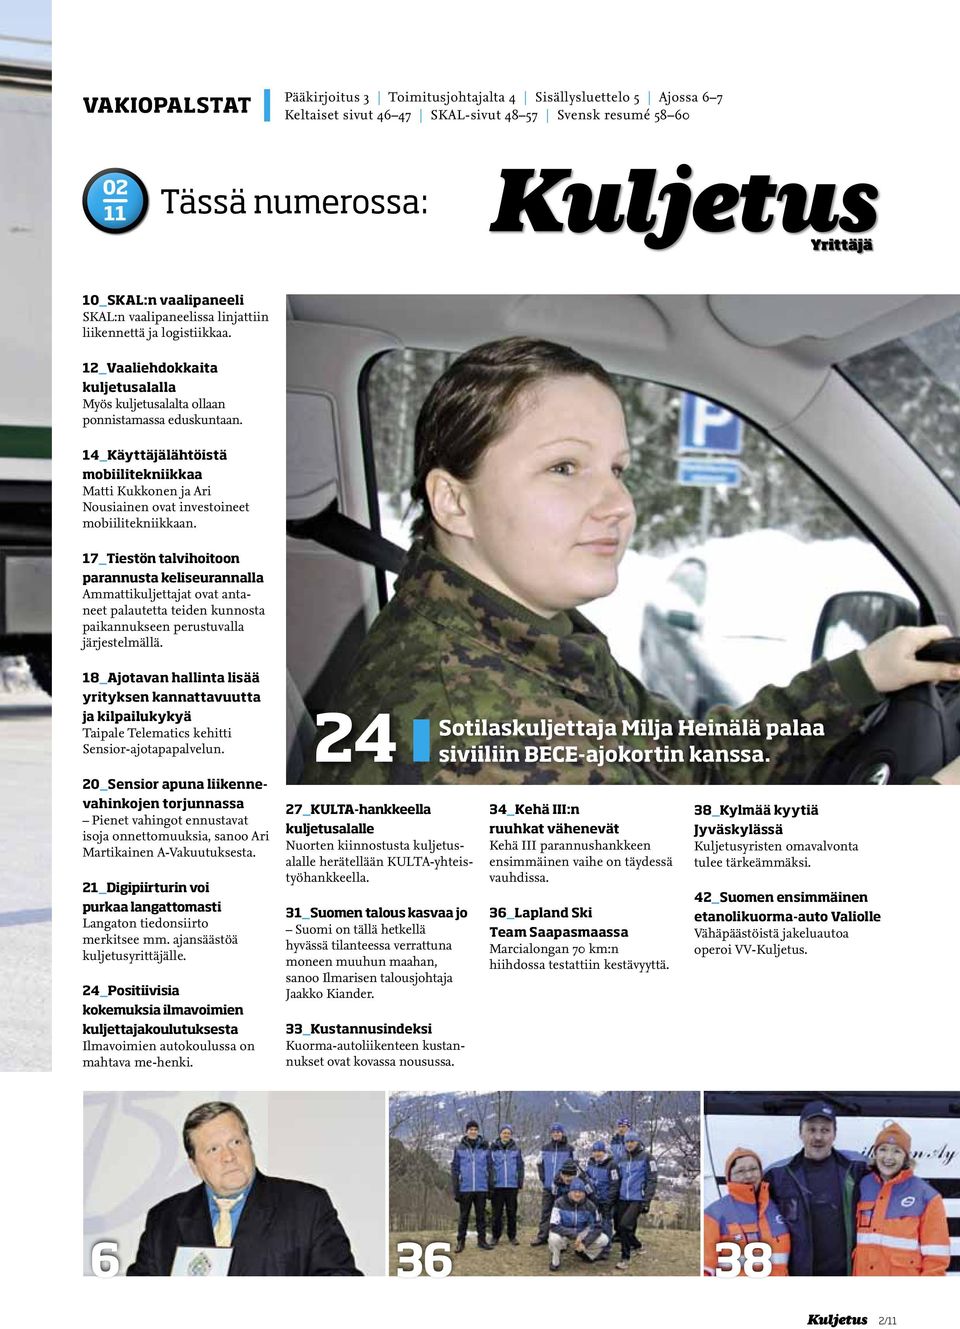 14_Käyttäjälähtöistä mobiilitekniikkaa Matti Kukkonen ja Ari Nousiainen ovat investoineet mobiilitekniikkaan.